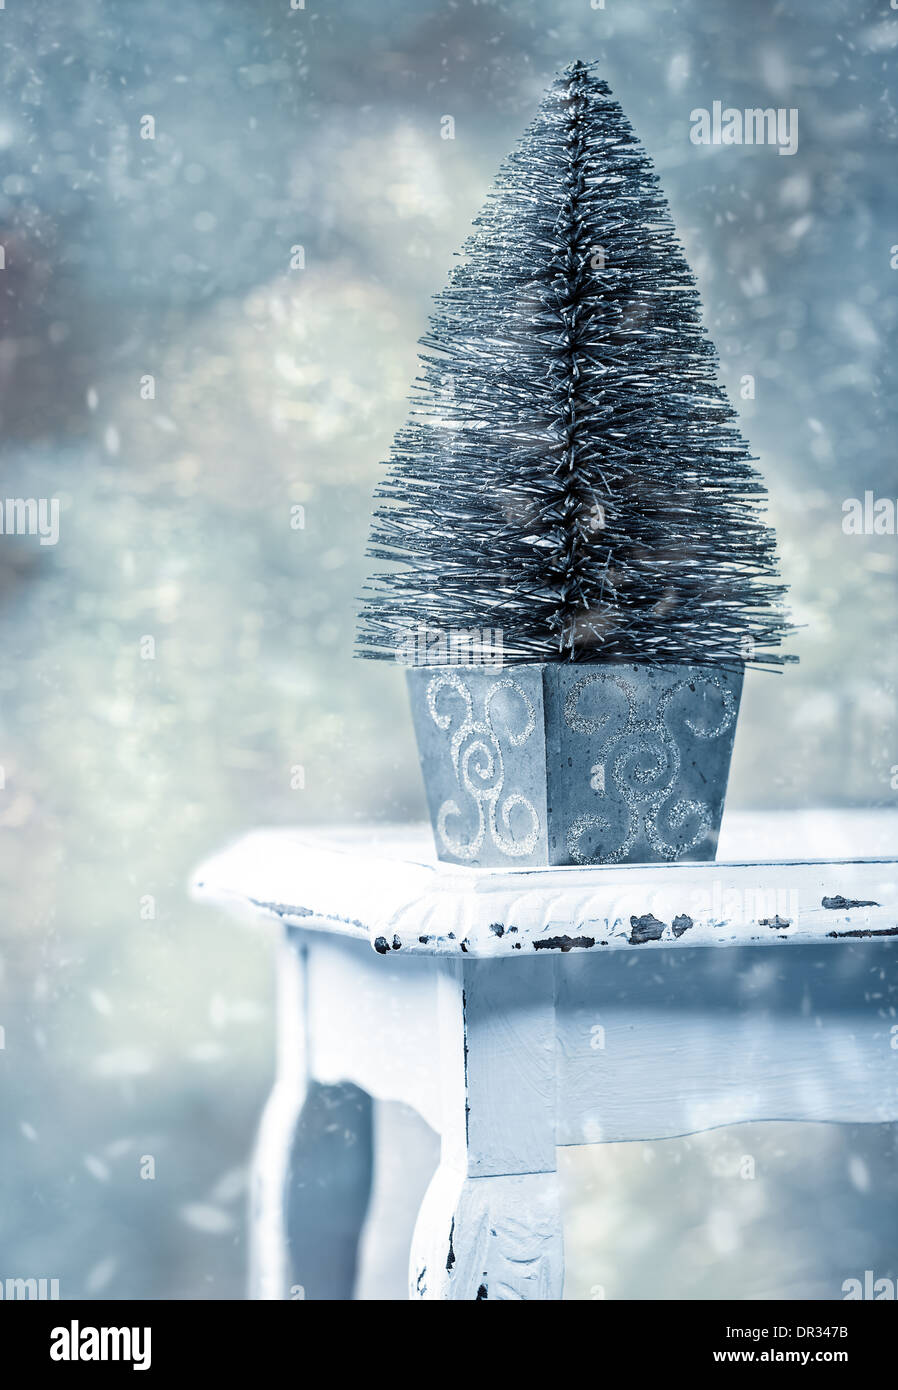 Miniatur-Weihnachtsbaum auf rustikalen Tisch mit fallendem Schnee - Vintage Filterwirkung Stockfoto